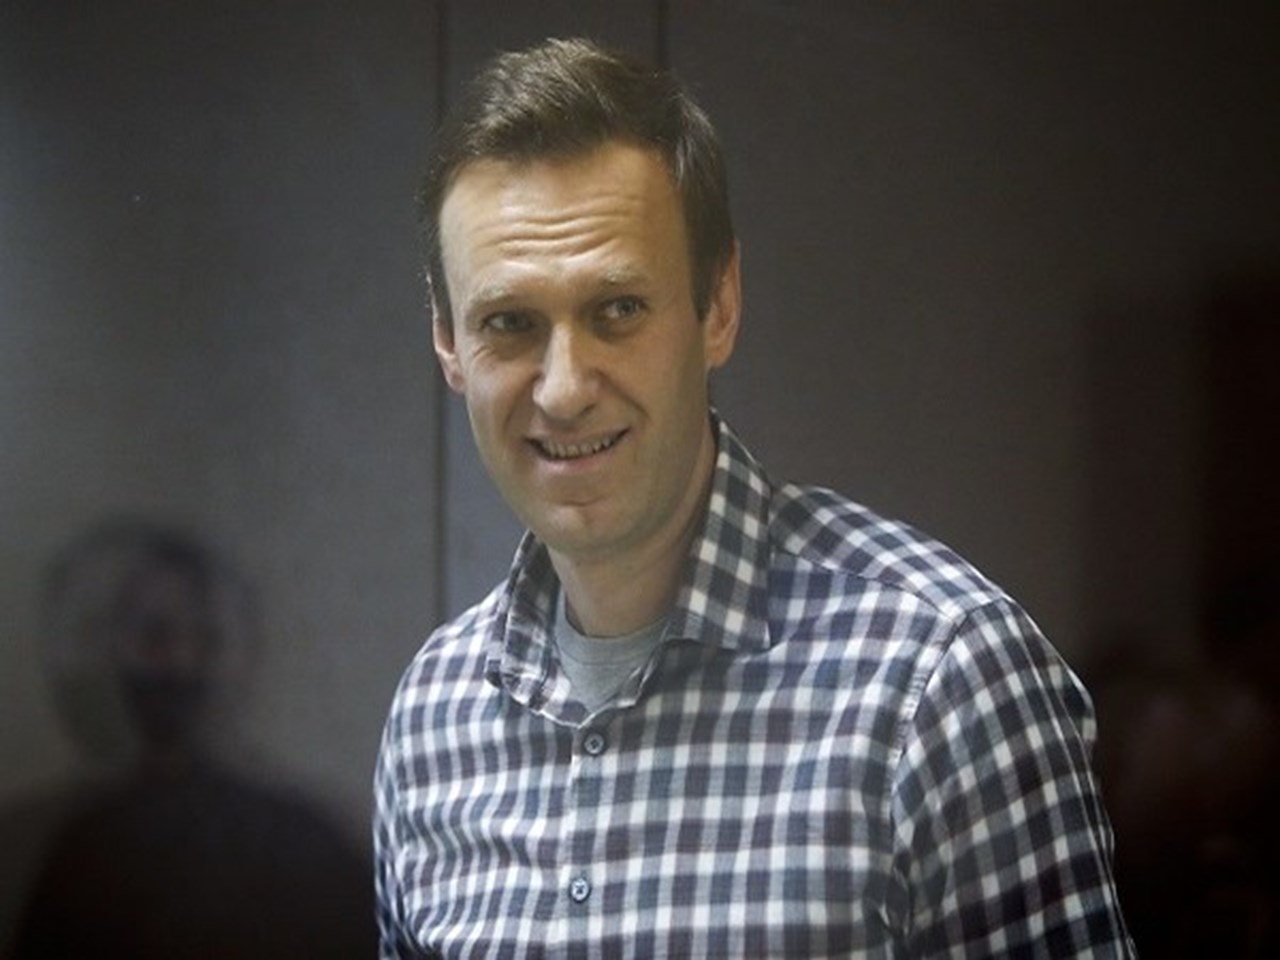 Российский Навальный посвящает свою Оскаровскую роль тем, кто борется с диктатурой.  Оскароносная российская оппозиция погрязла в конфликте и не только